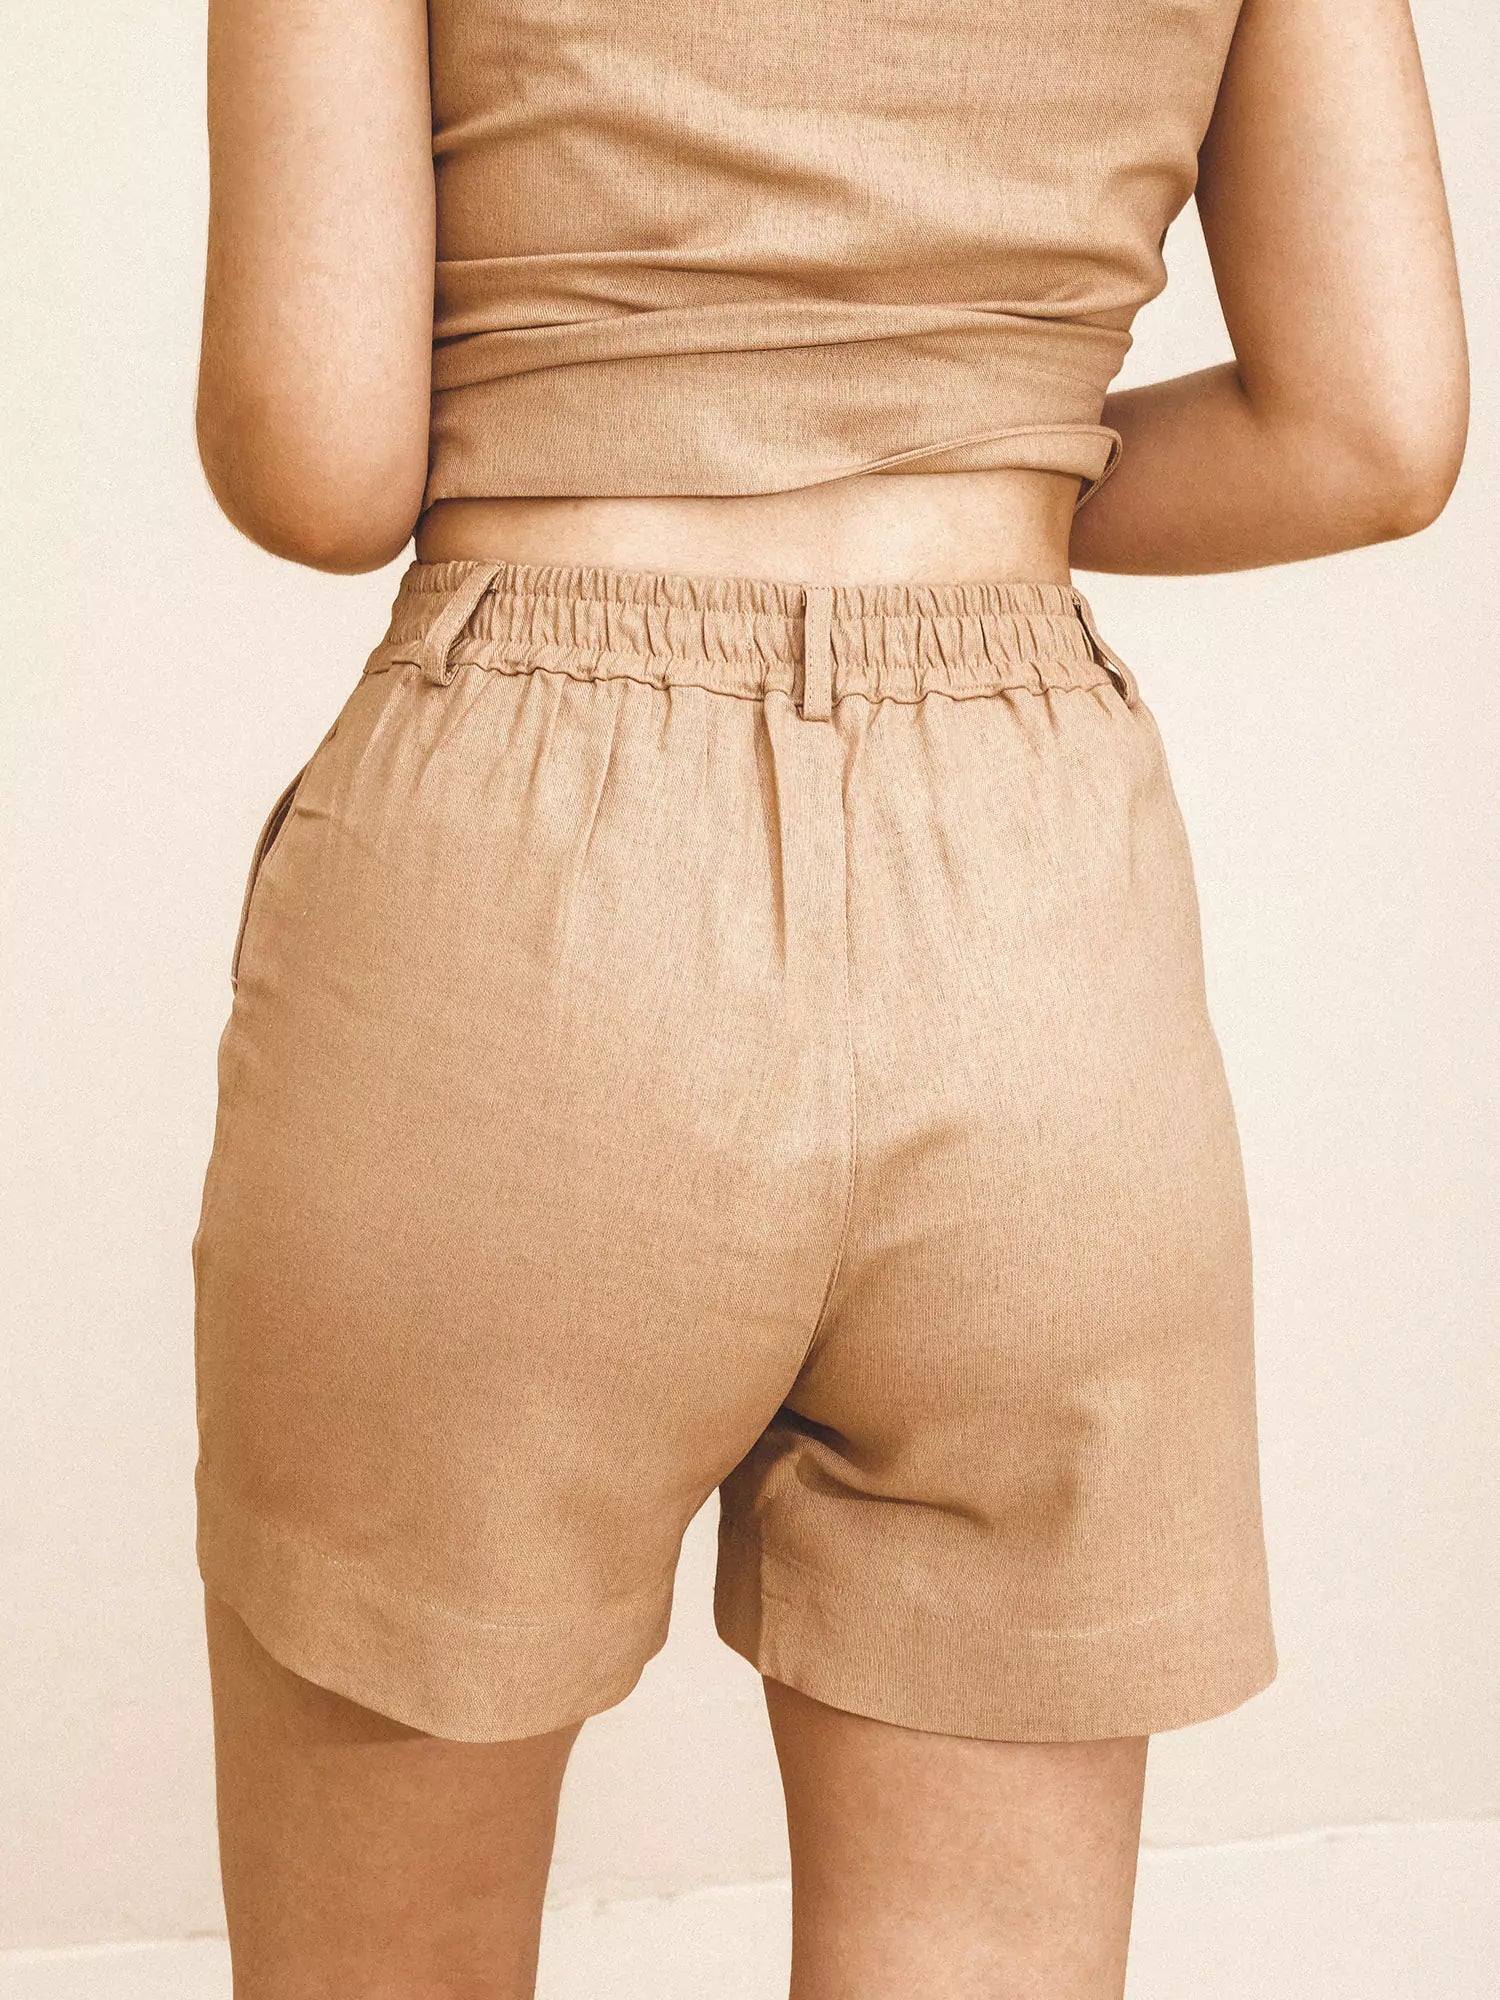 Shorts Alfaiataria de Linho e Viscose FSC™ Bege. Compre online moda sustentável e atemporal na Minimadeia. Roupas femininas estilosas, básicas e sustentáveis. Foto produto 09